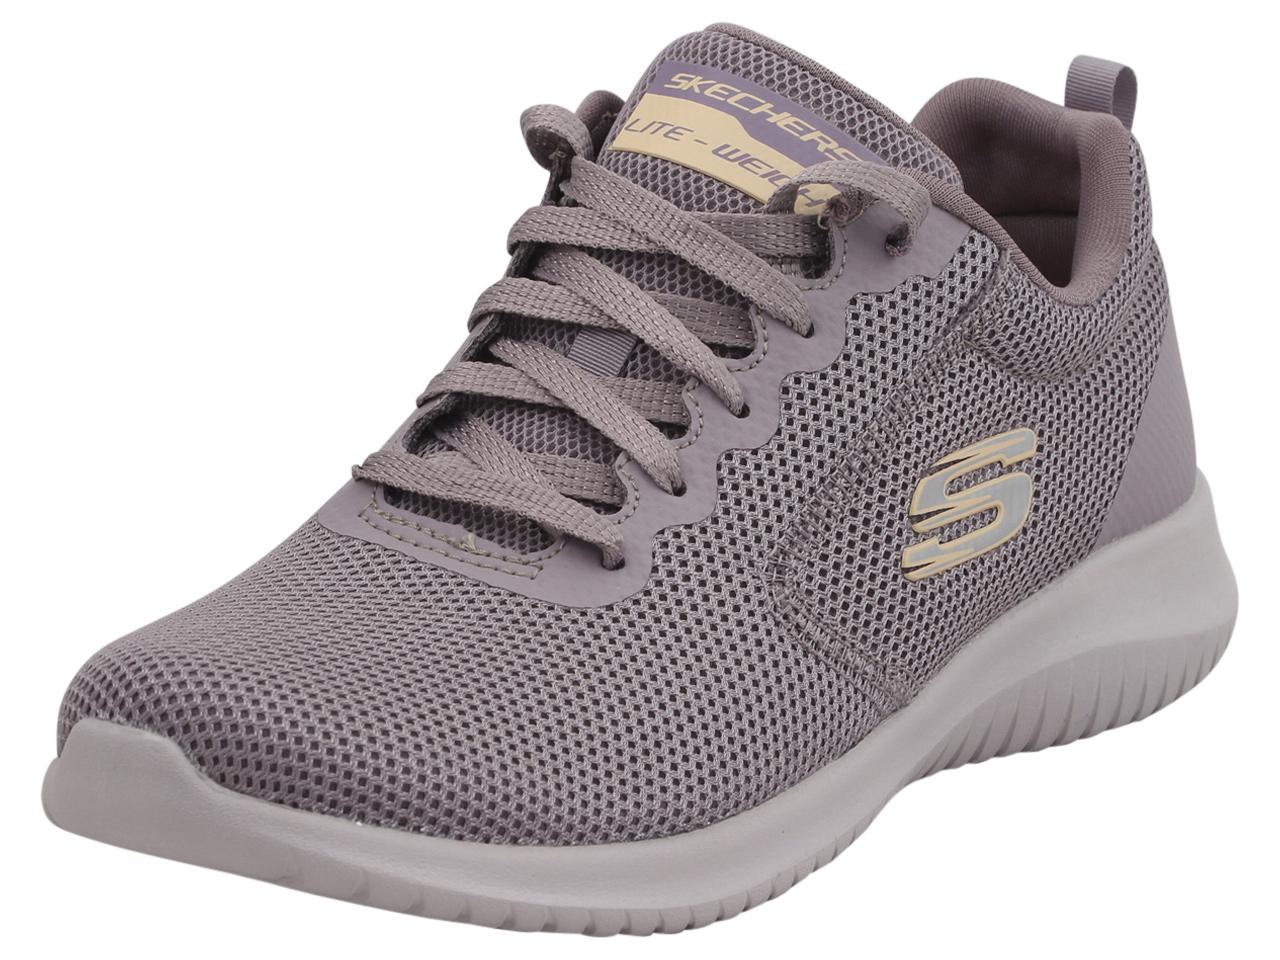 Skechers Women's Ultra Flex Free Spirits Memory Foam Sneakers Shoes - Purple - 7.5 B(M) US